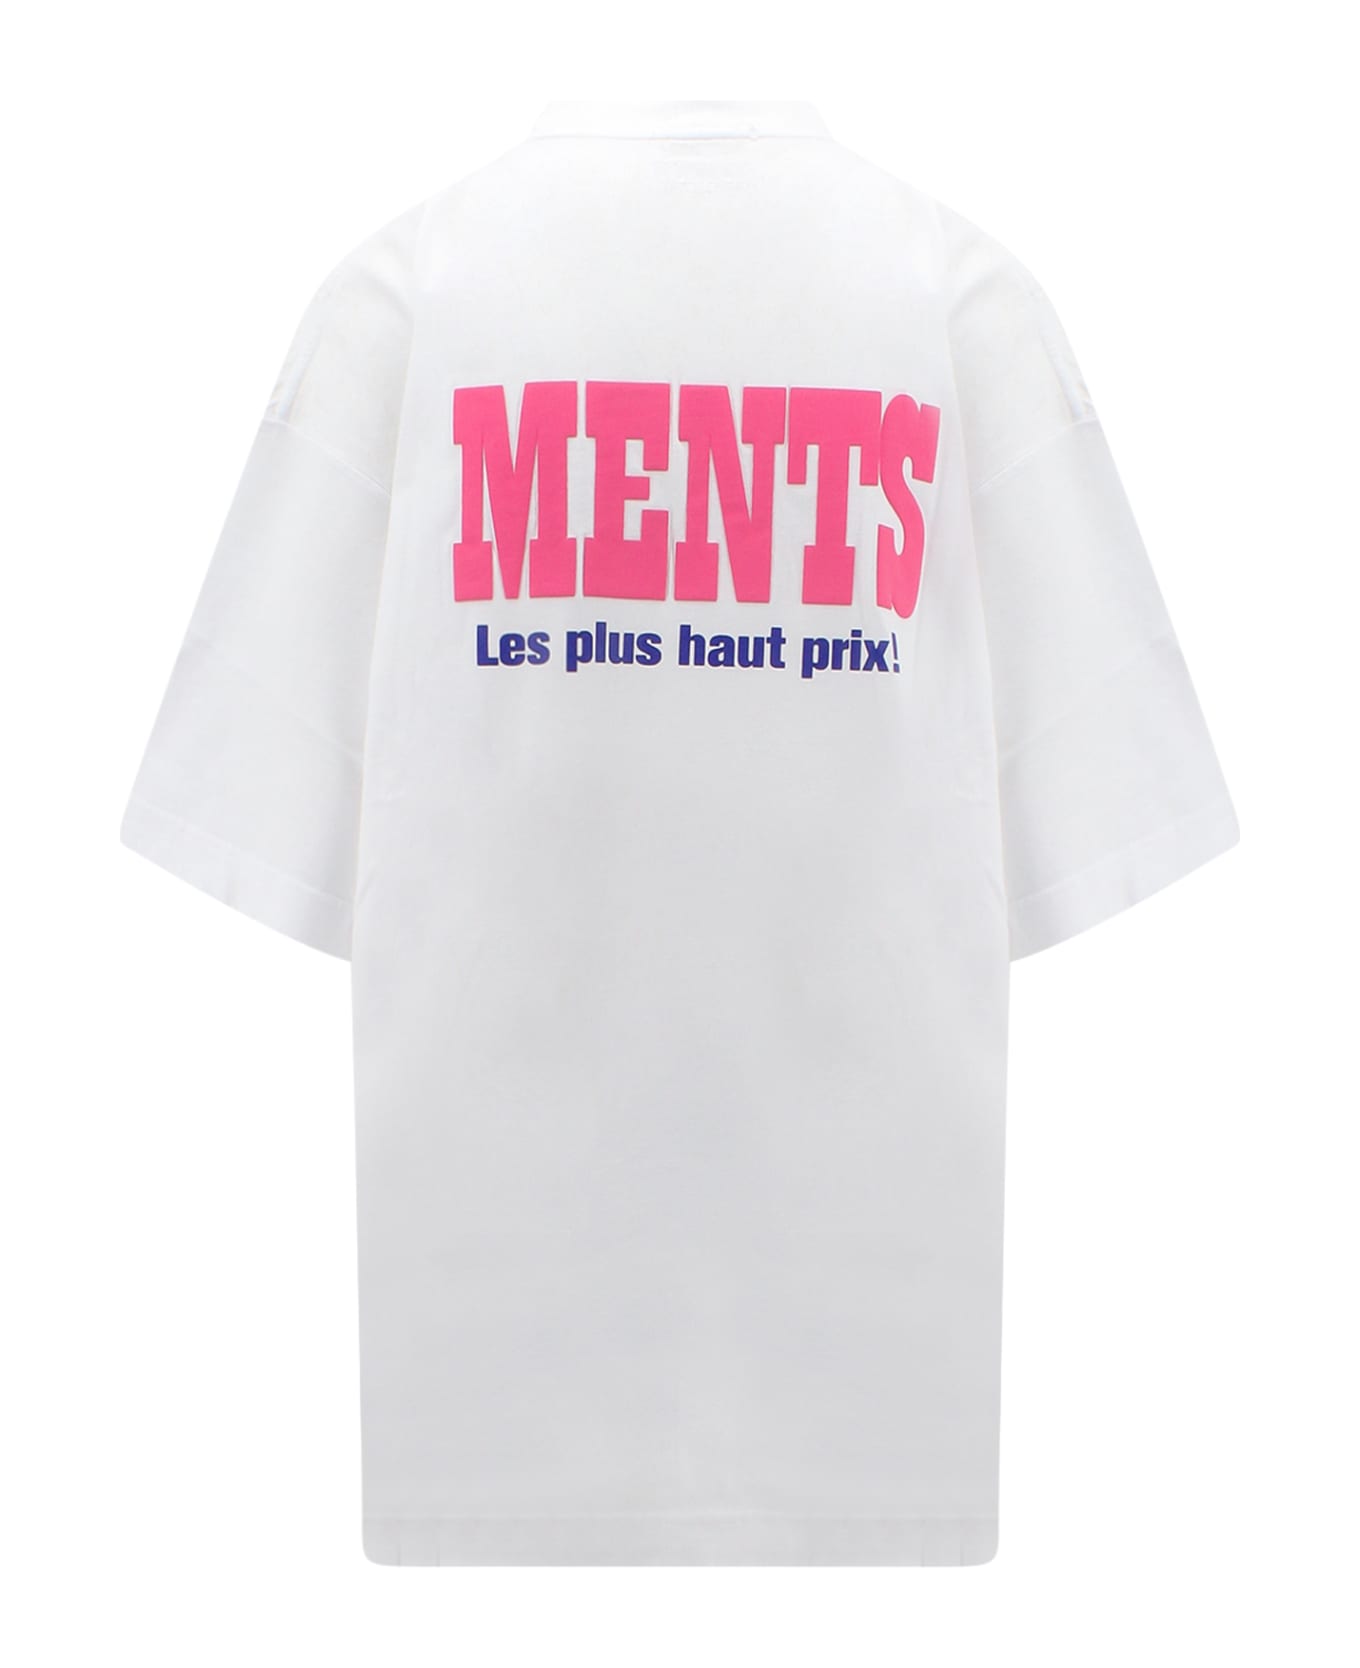 VETEMENTS T-shirt - White